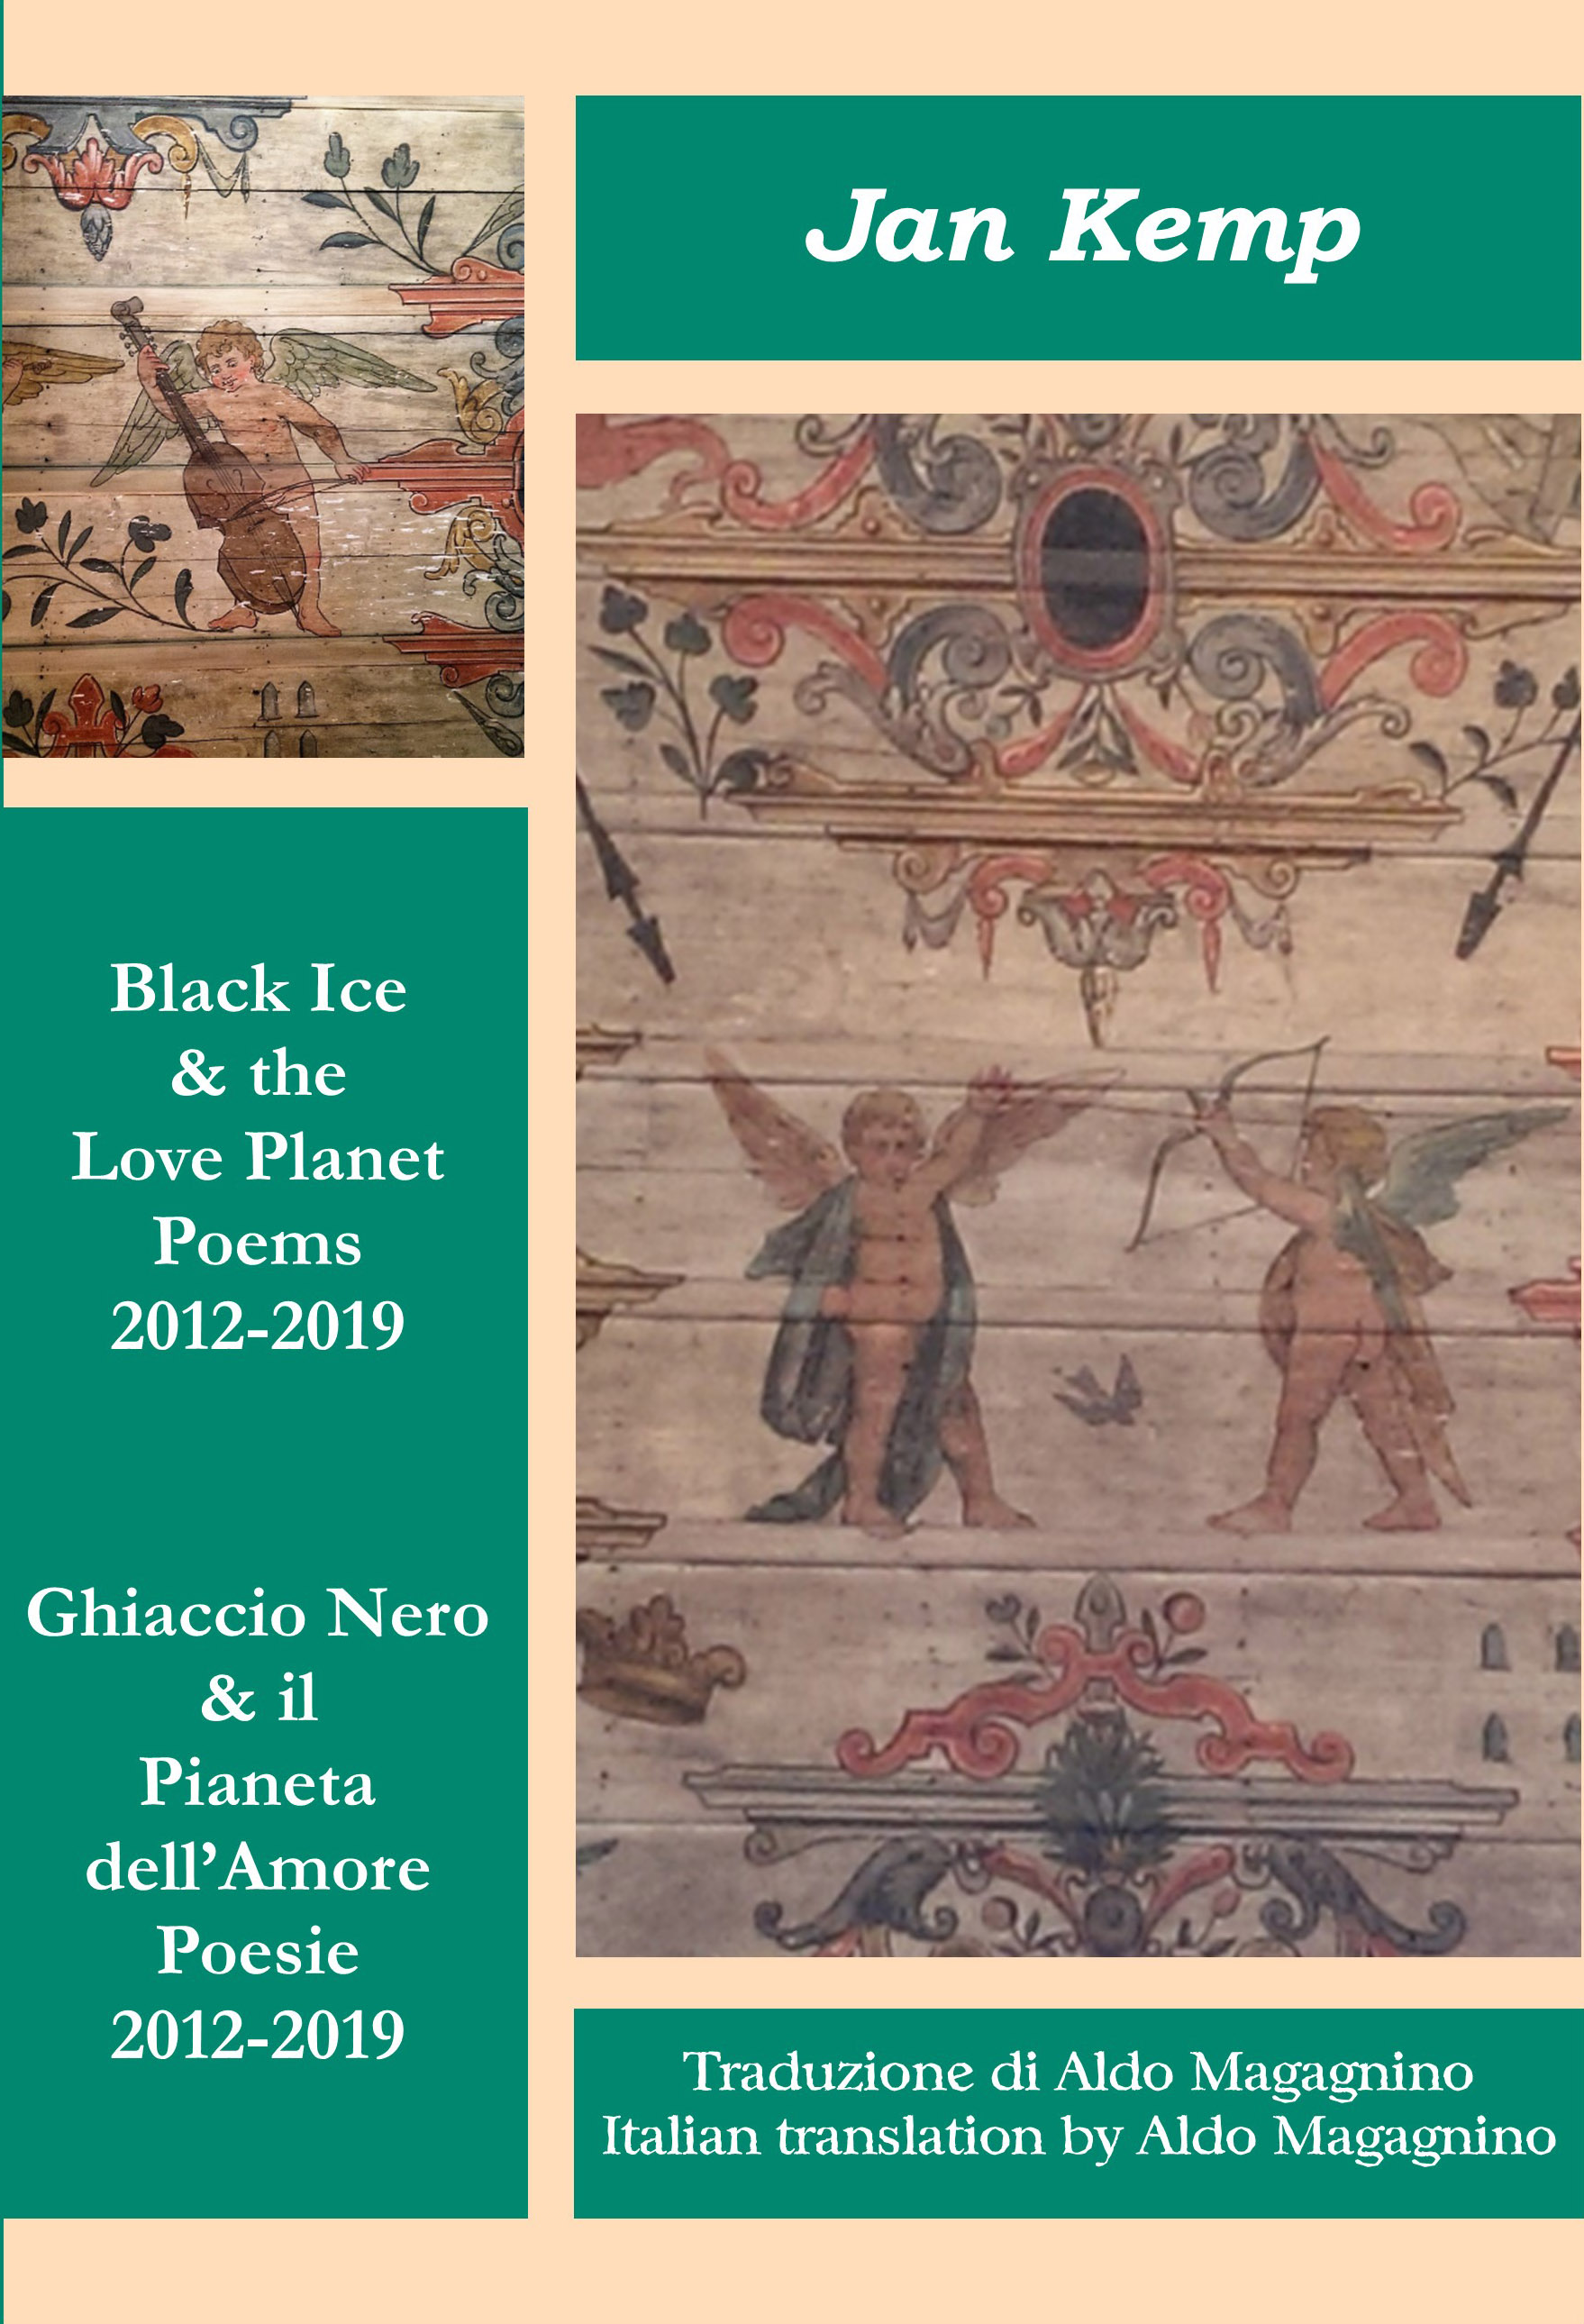 Black Ice & the Love Planet - Ghiaccio Nero & il Pianeta dell’Amore